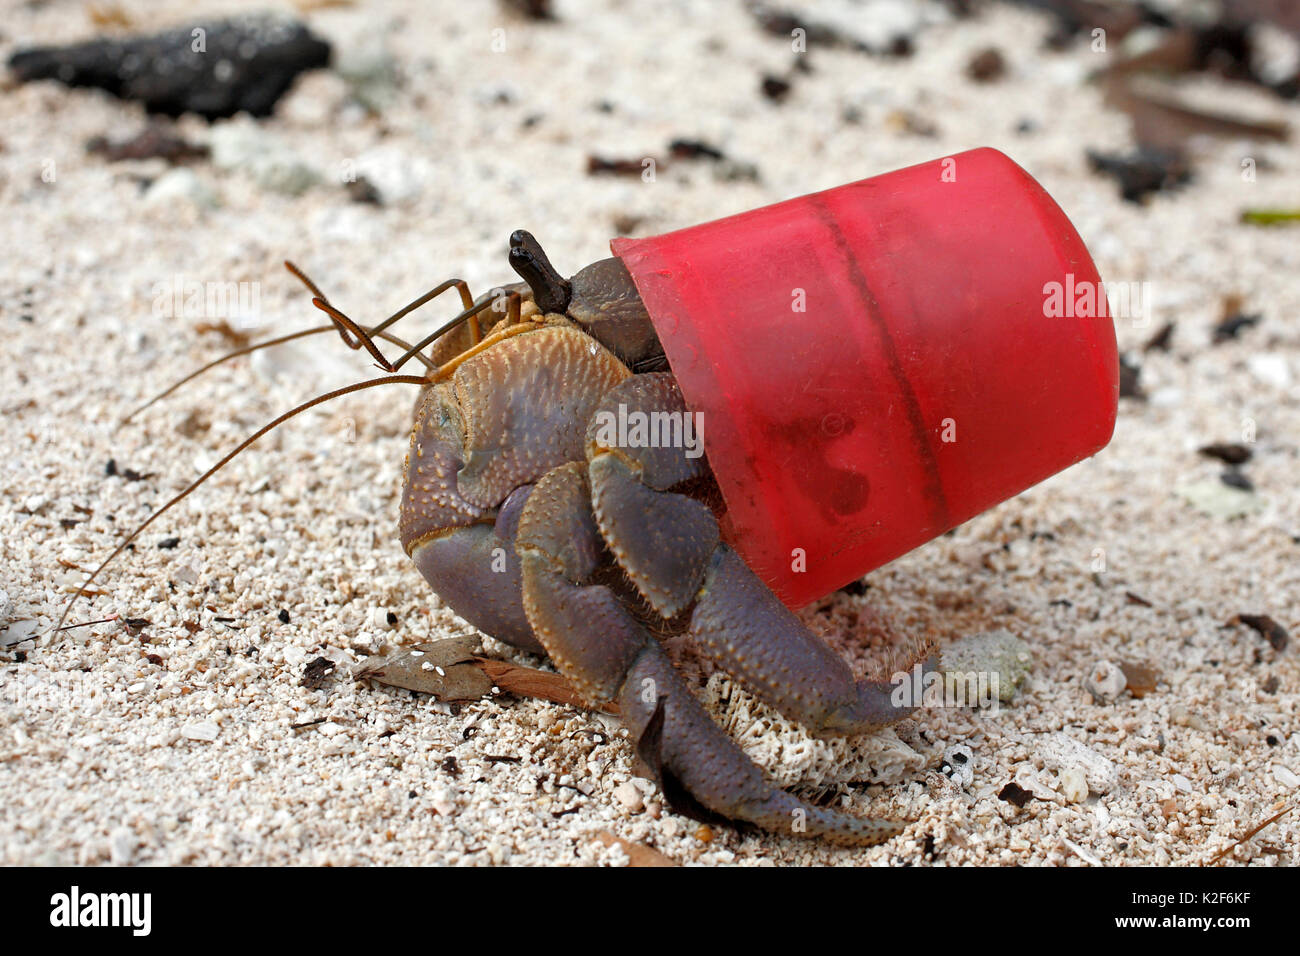 L'hermite terrestre Coenobita brevimanus, rouge, à l'aide d'une capsule de bouteille comme une coquille de protection au lieu de l'habituelle mollusk shell. Banque D'Images